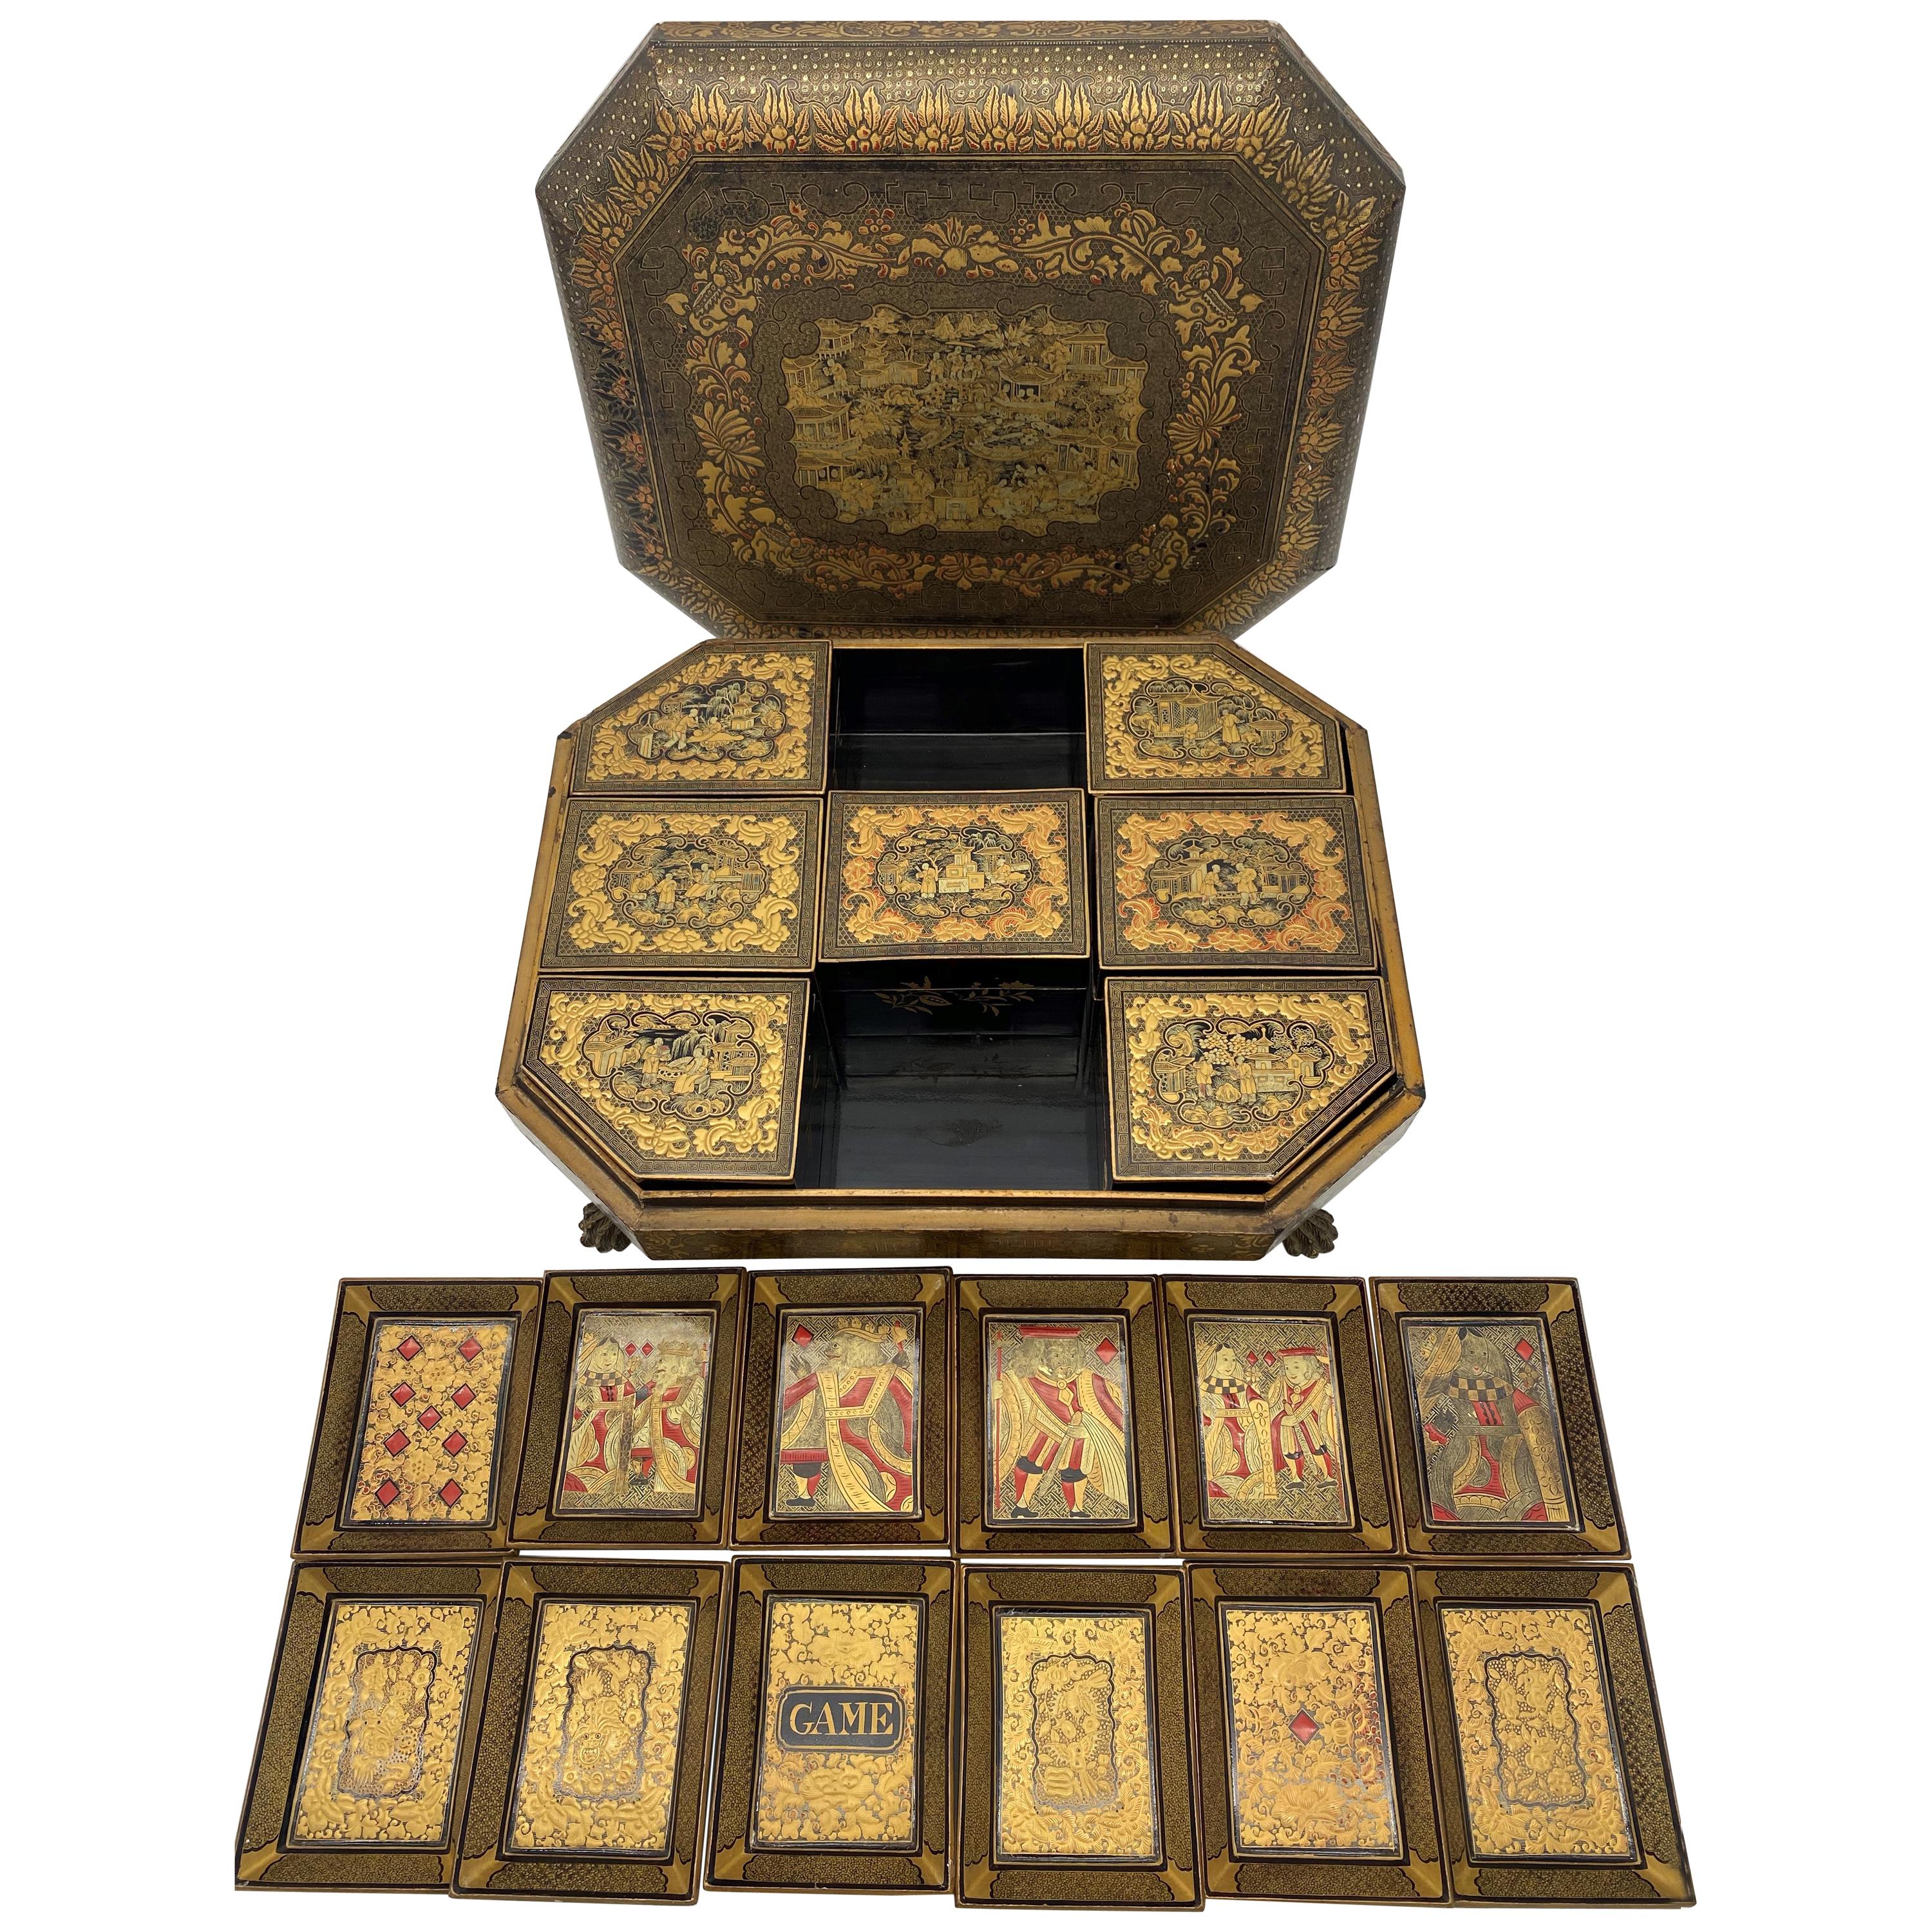 Antigua caja de juego de laca china de exportación del siglo XIX